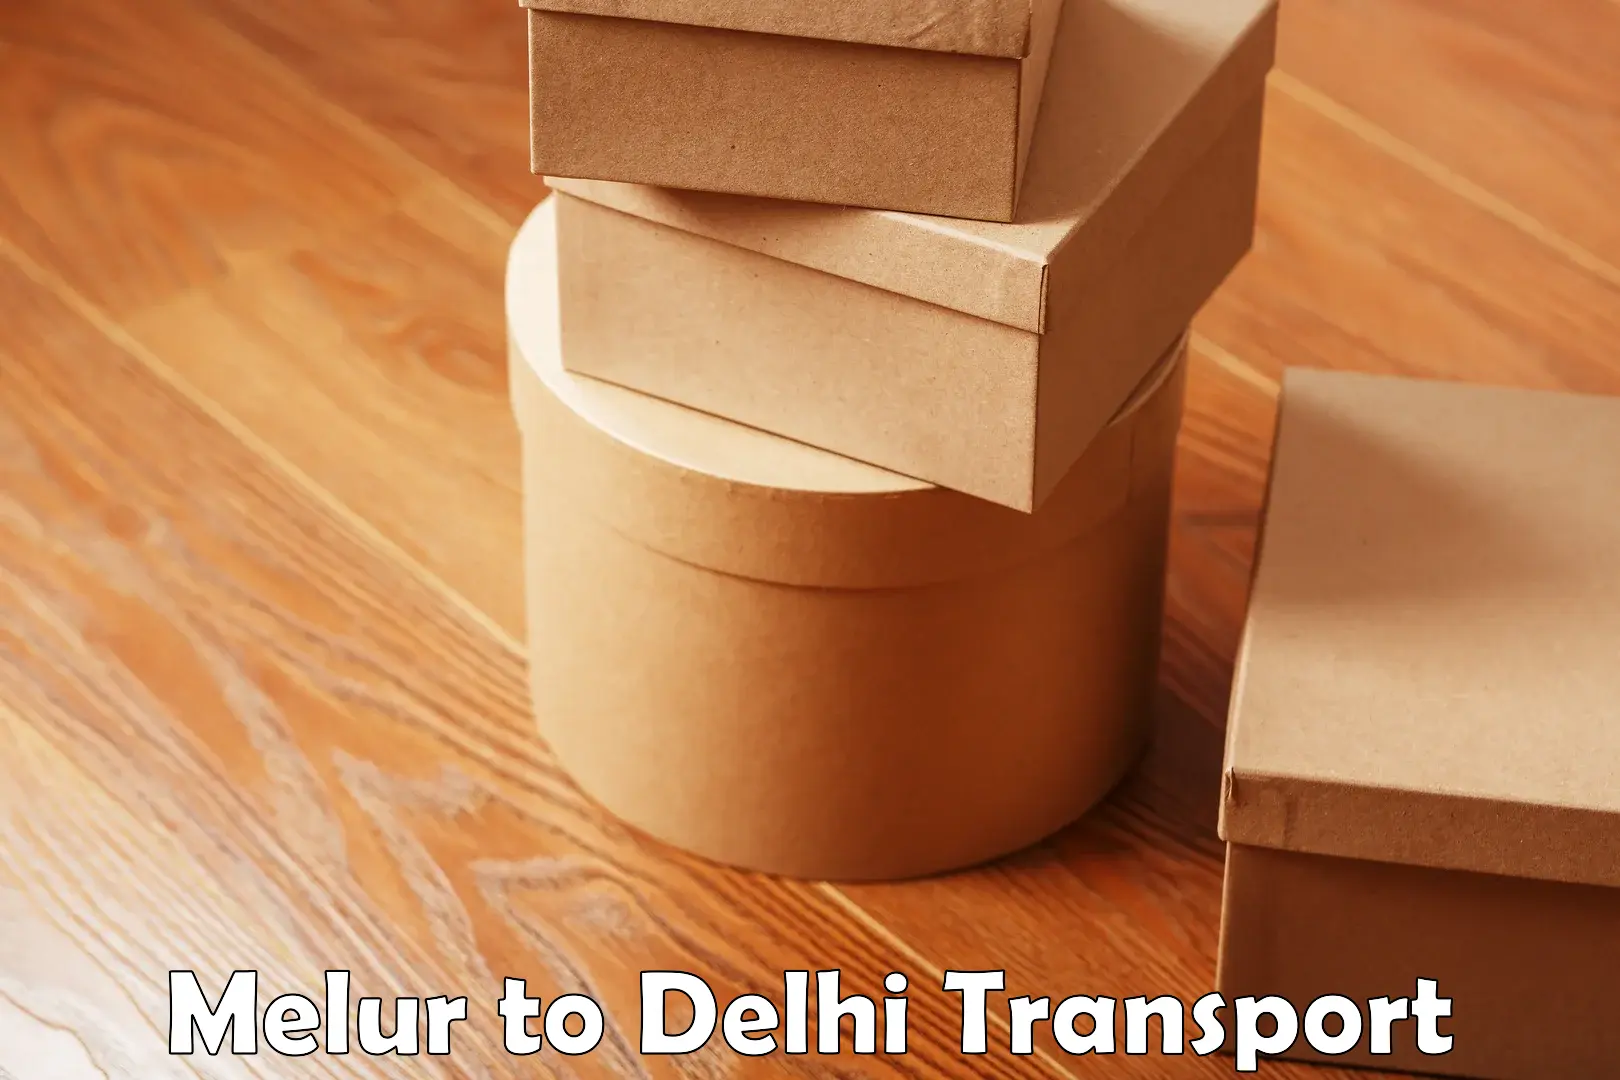 Bike shipping service Melur to Delhi